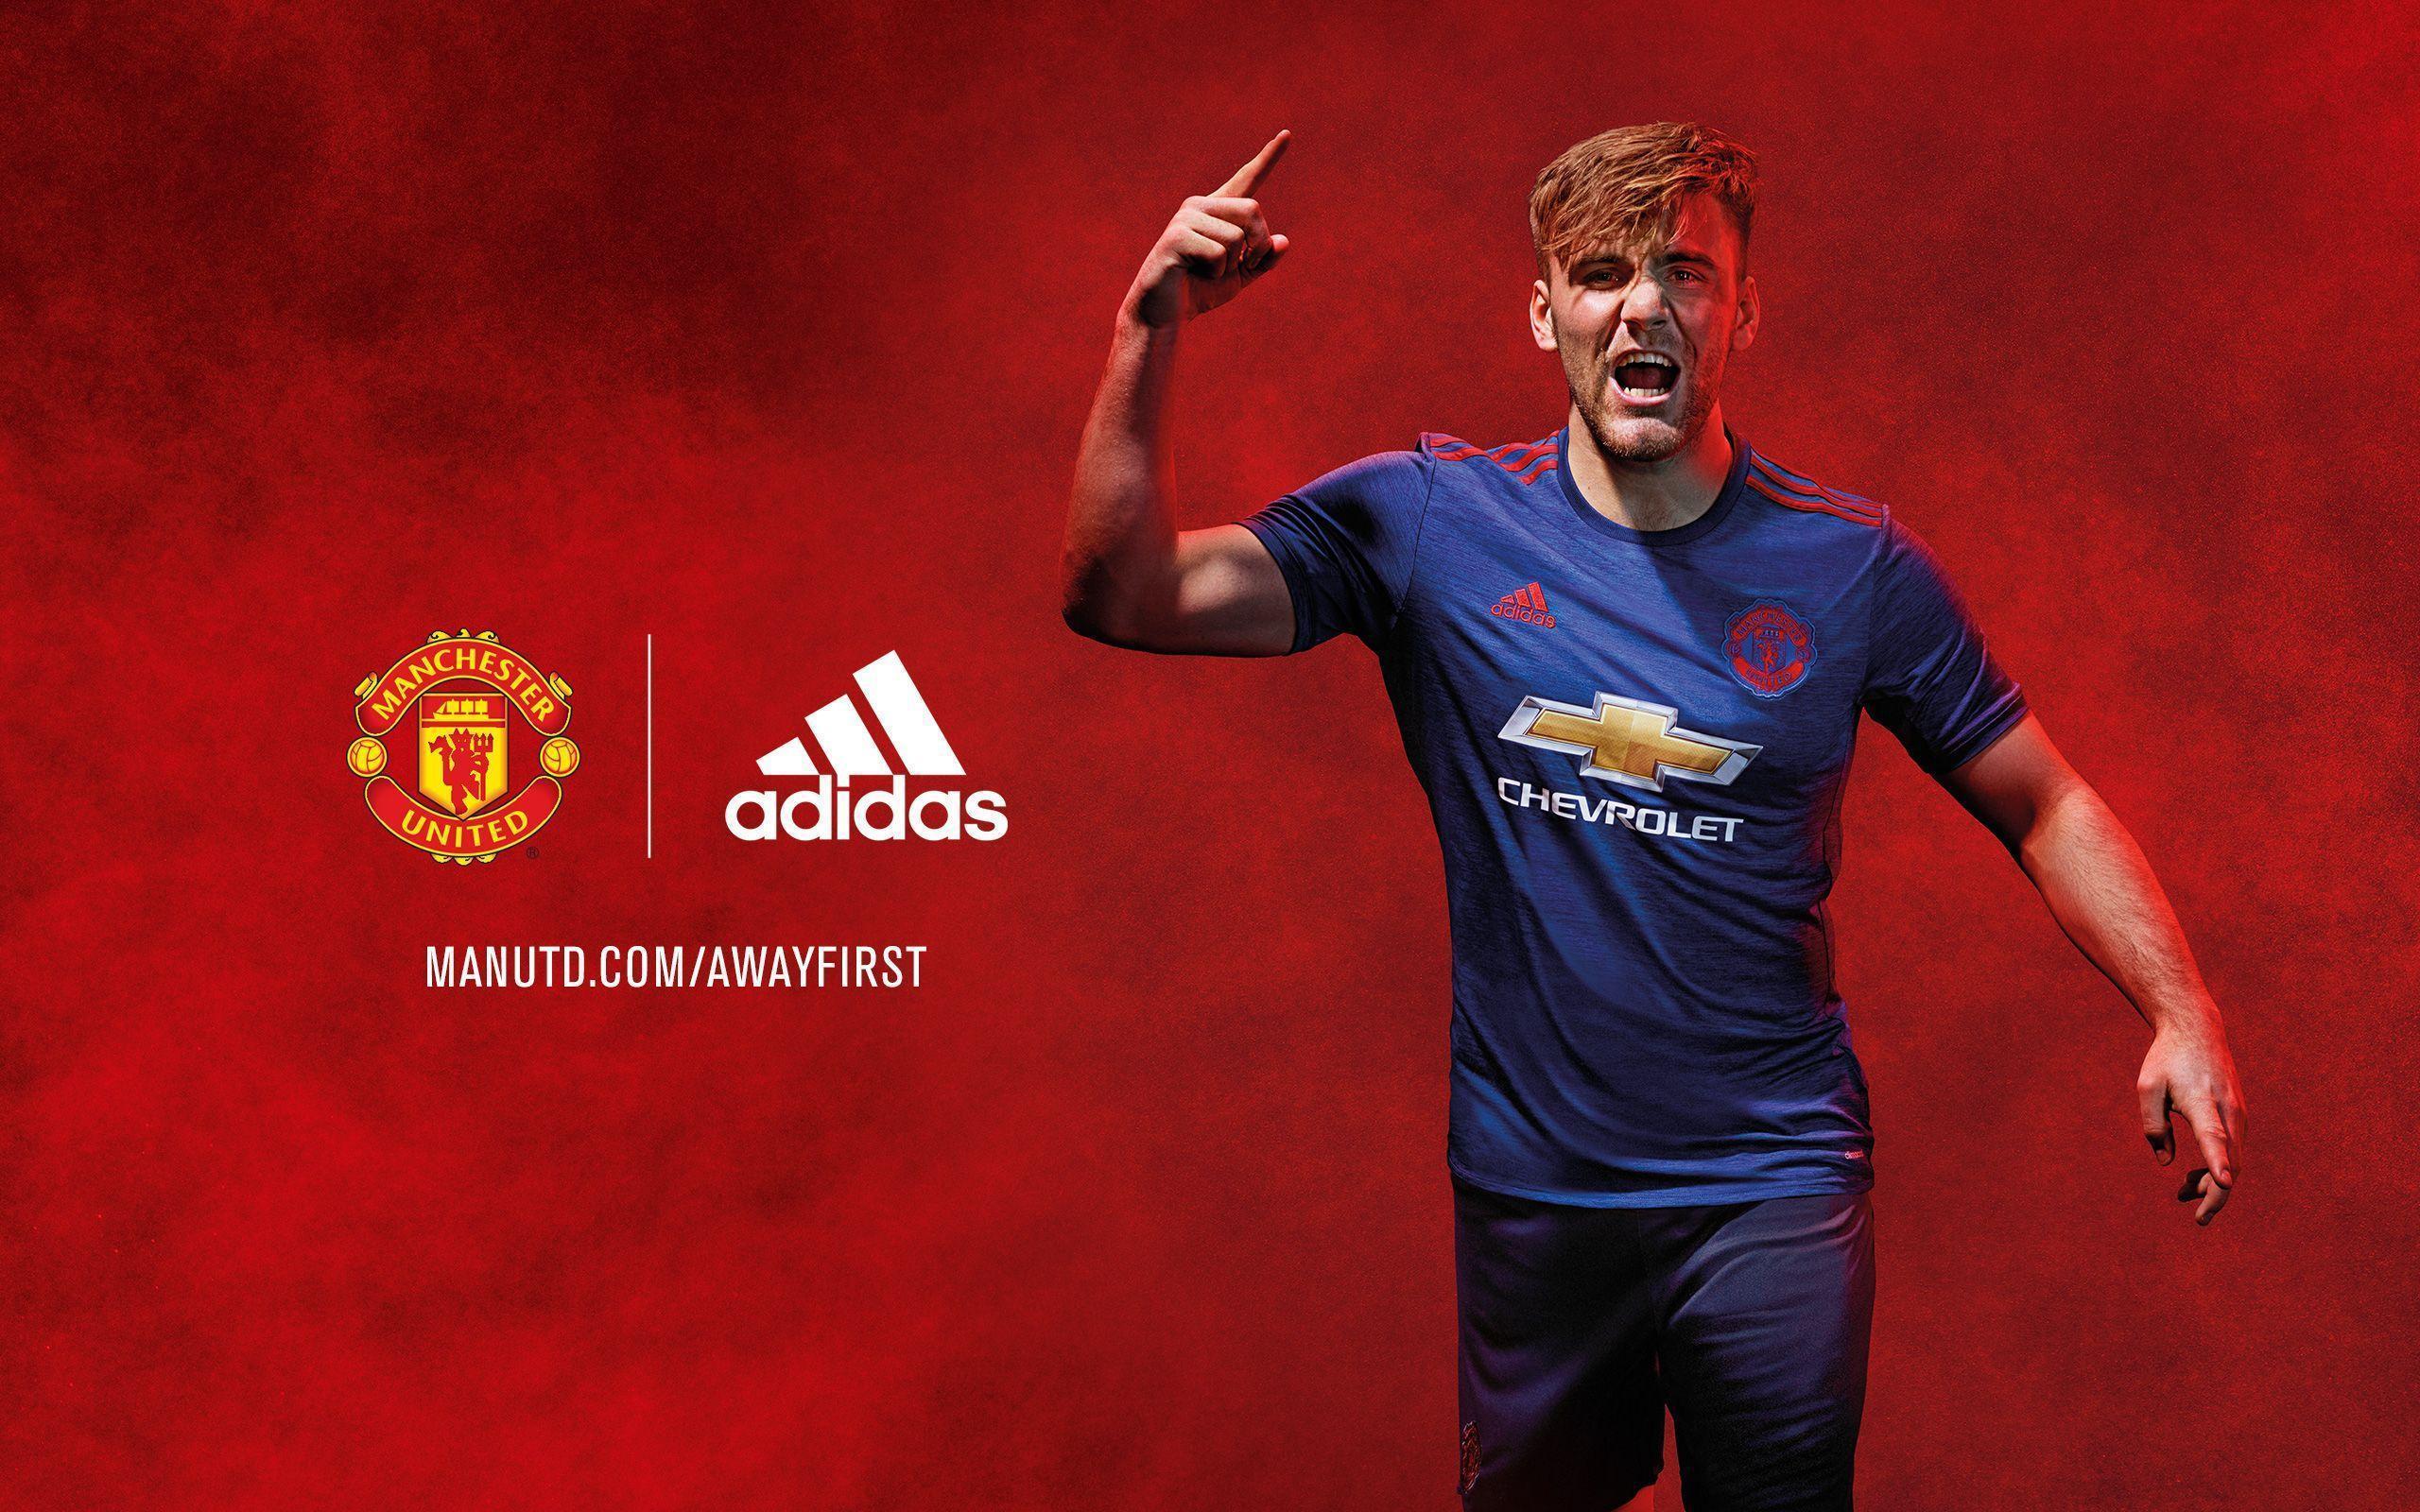 New kit wallpaper Manchester United Website